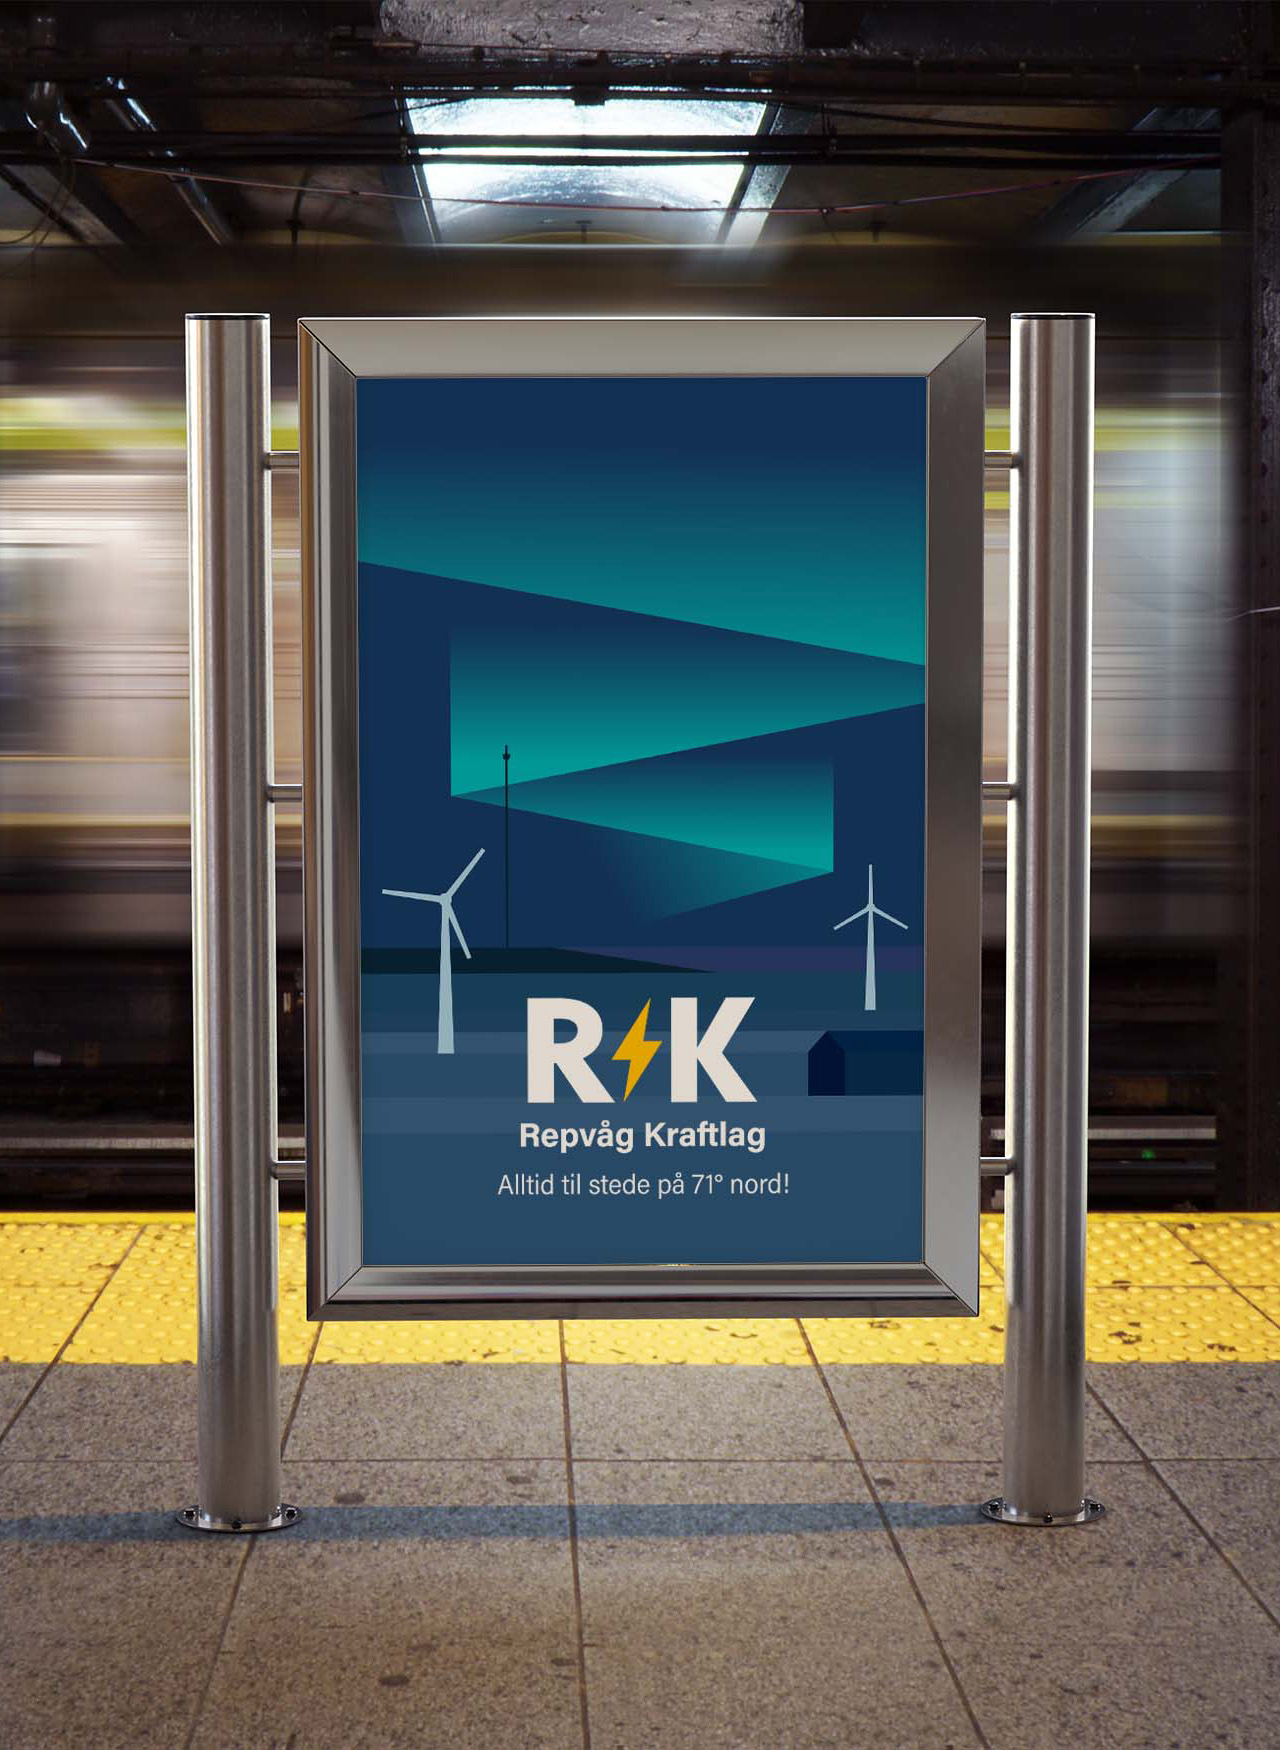 Skilt som viser en plakat med Repvåg Kraftlags nye profil, laget av Designu